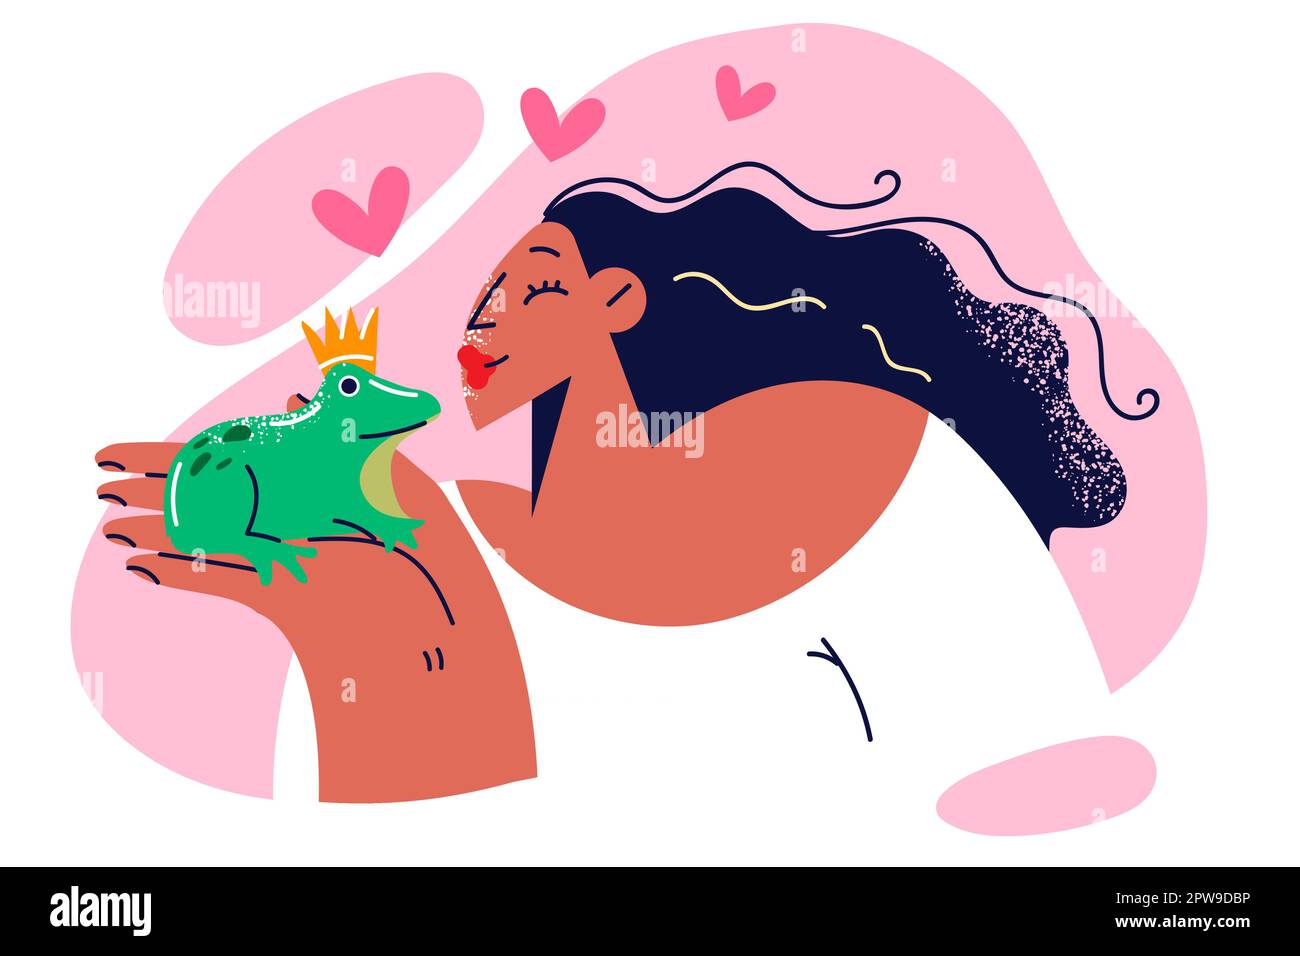 La donna vuole baciare la rana incoronata dopo aver letto la favola sulla trasformazione dell'animale in principe Illustrazione Vettoriale